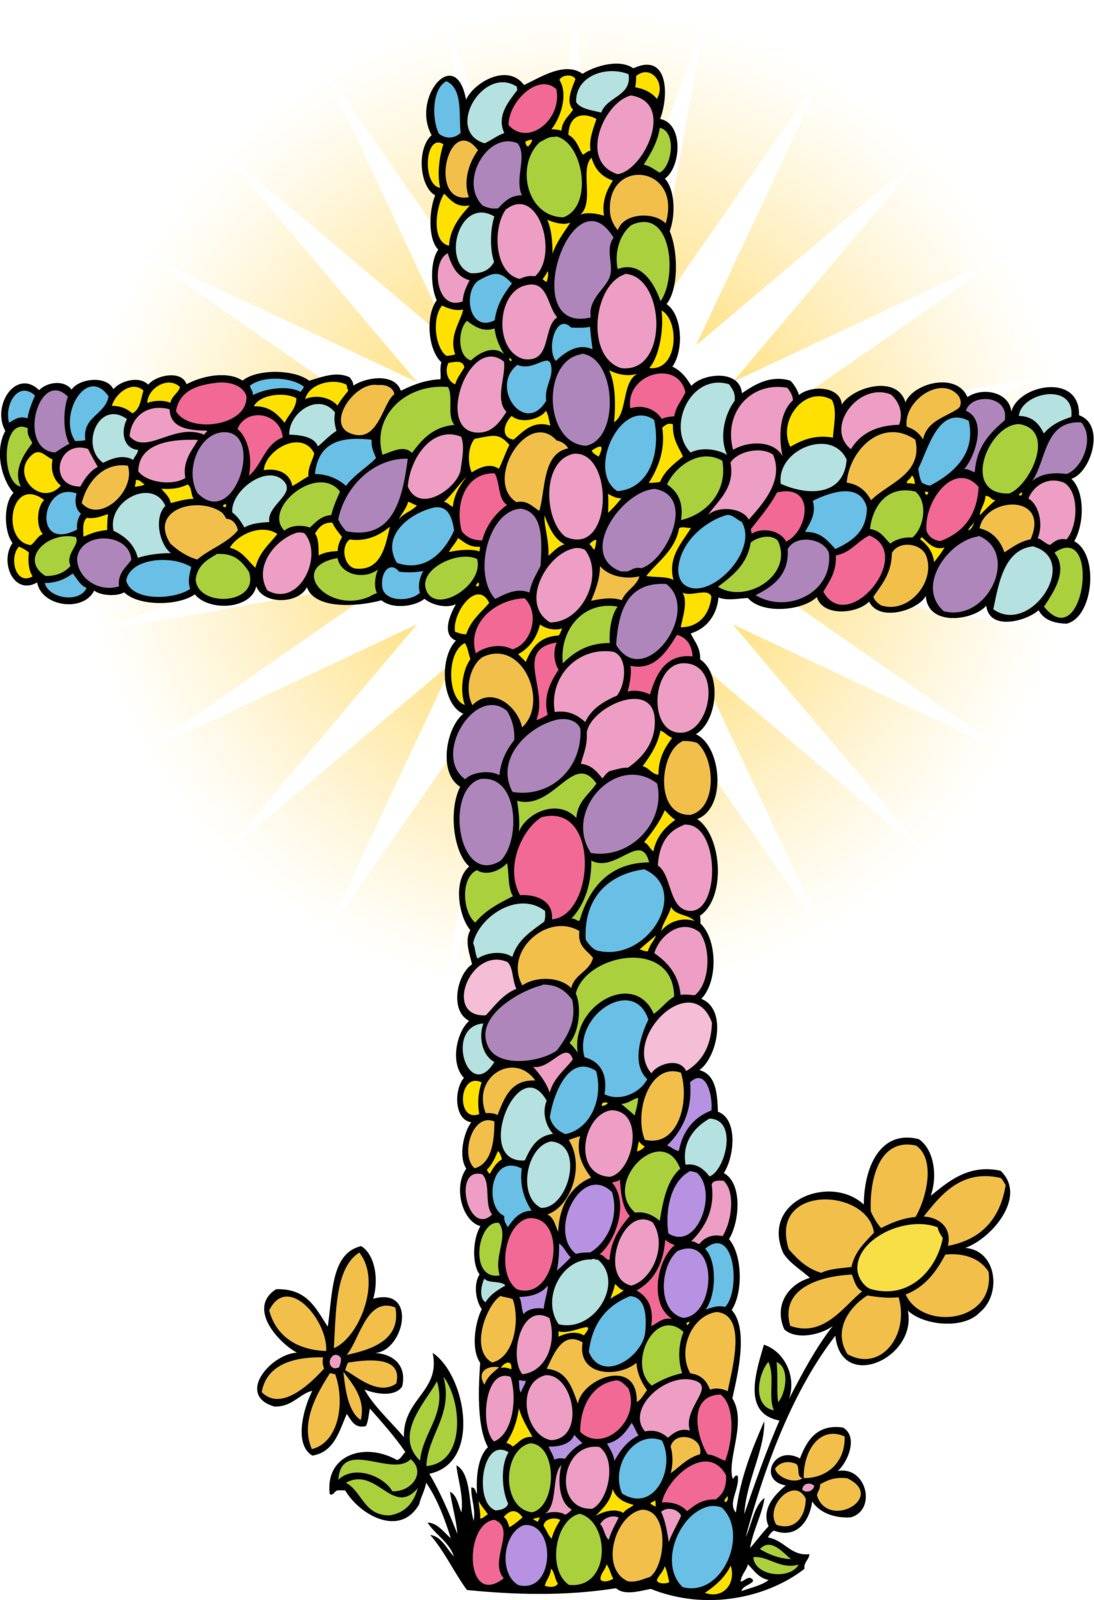 Cross in shape of eggs for Easter Sunday.